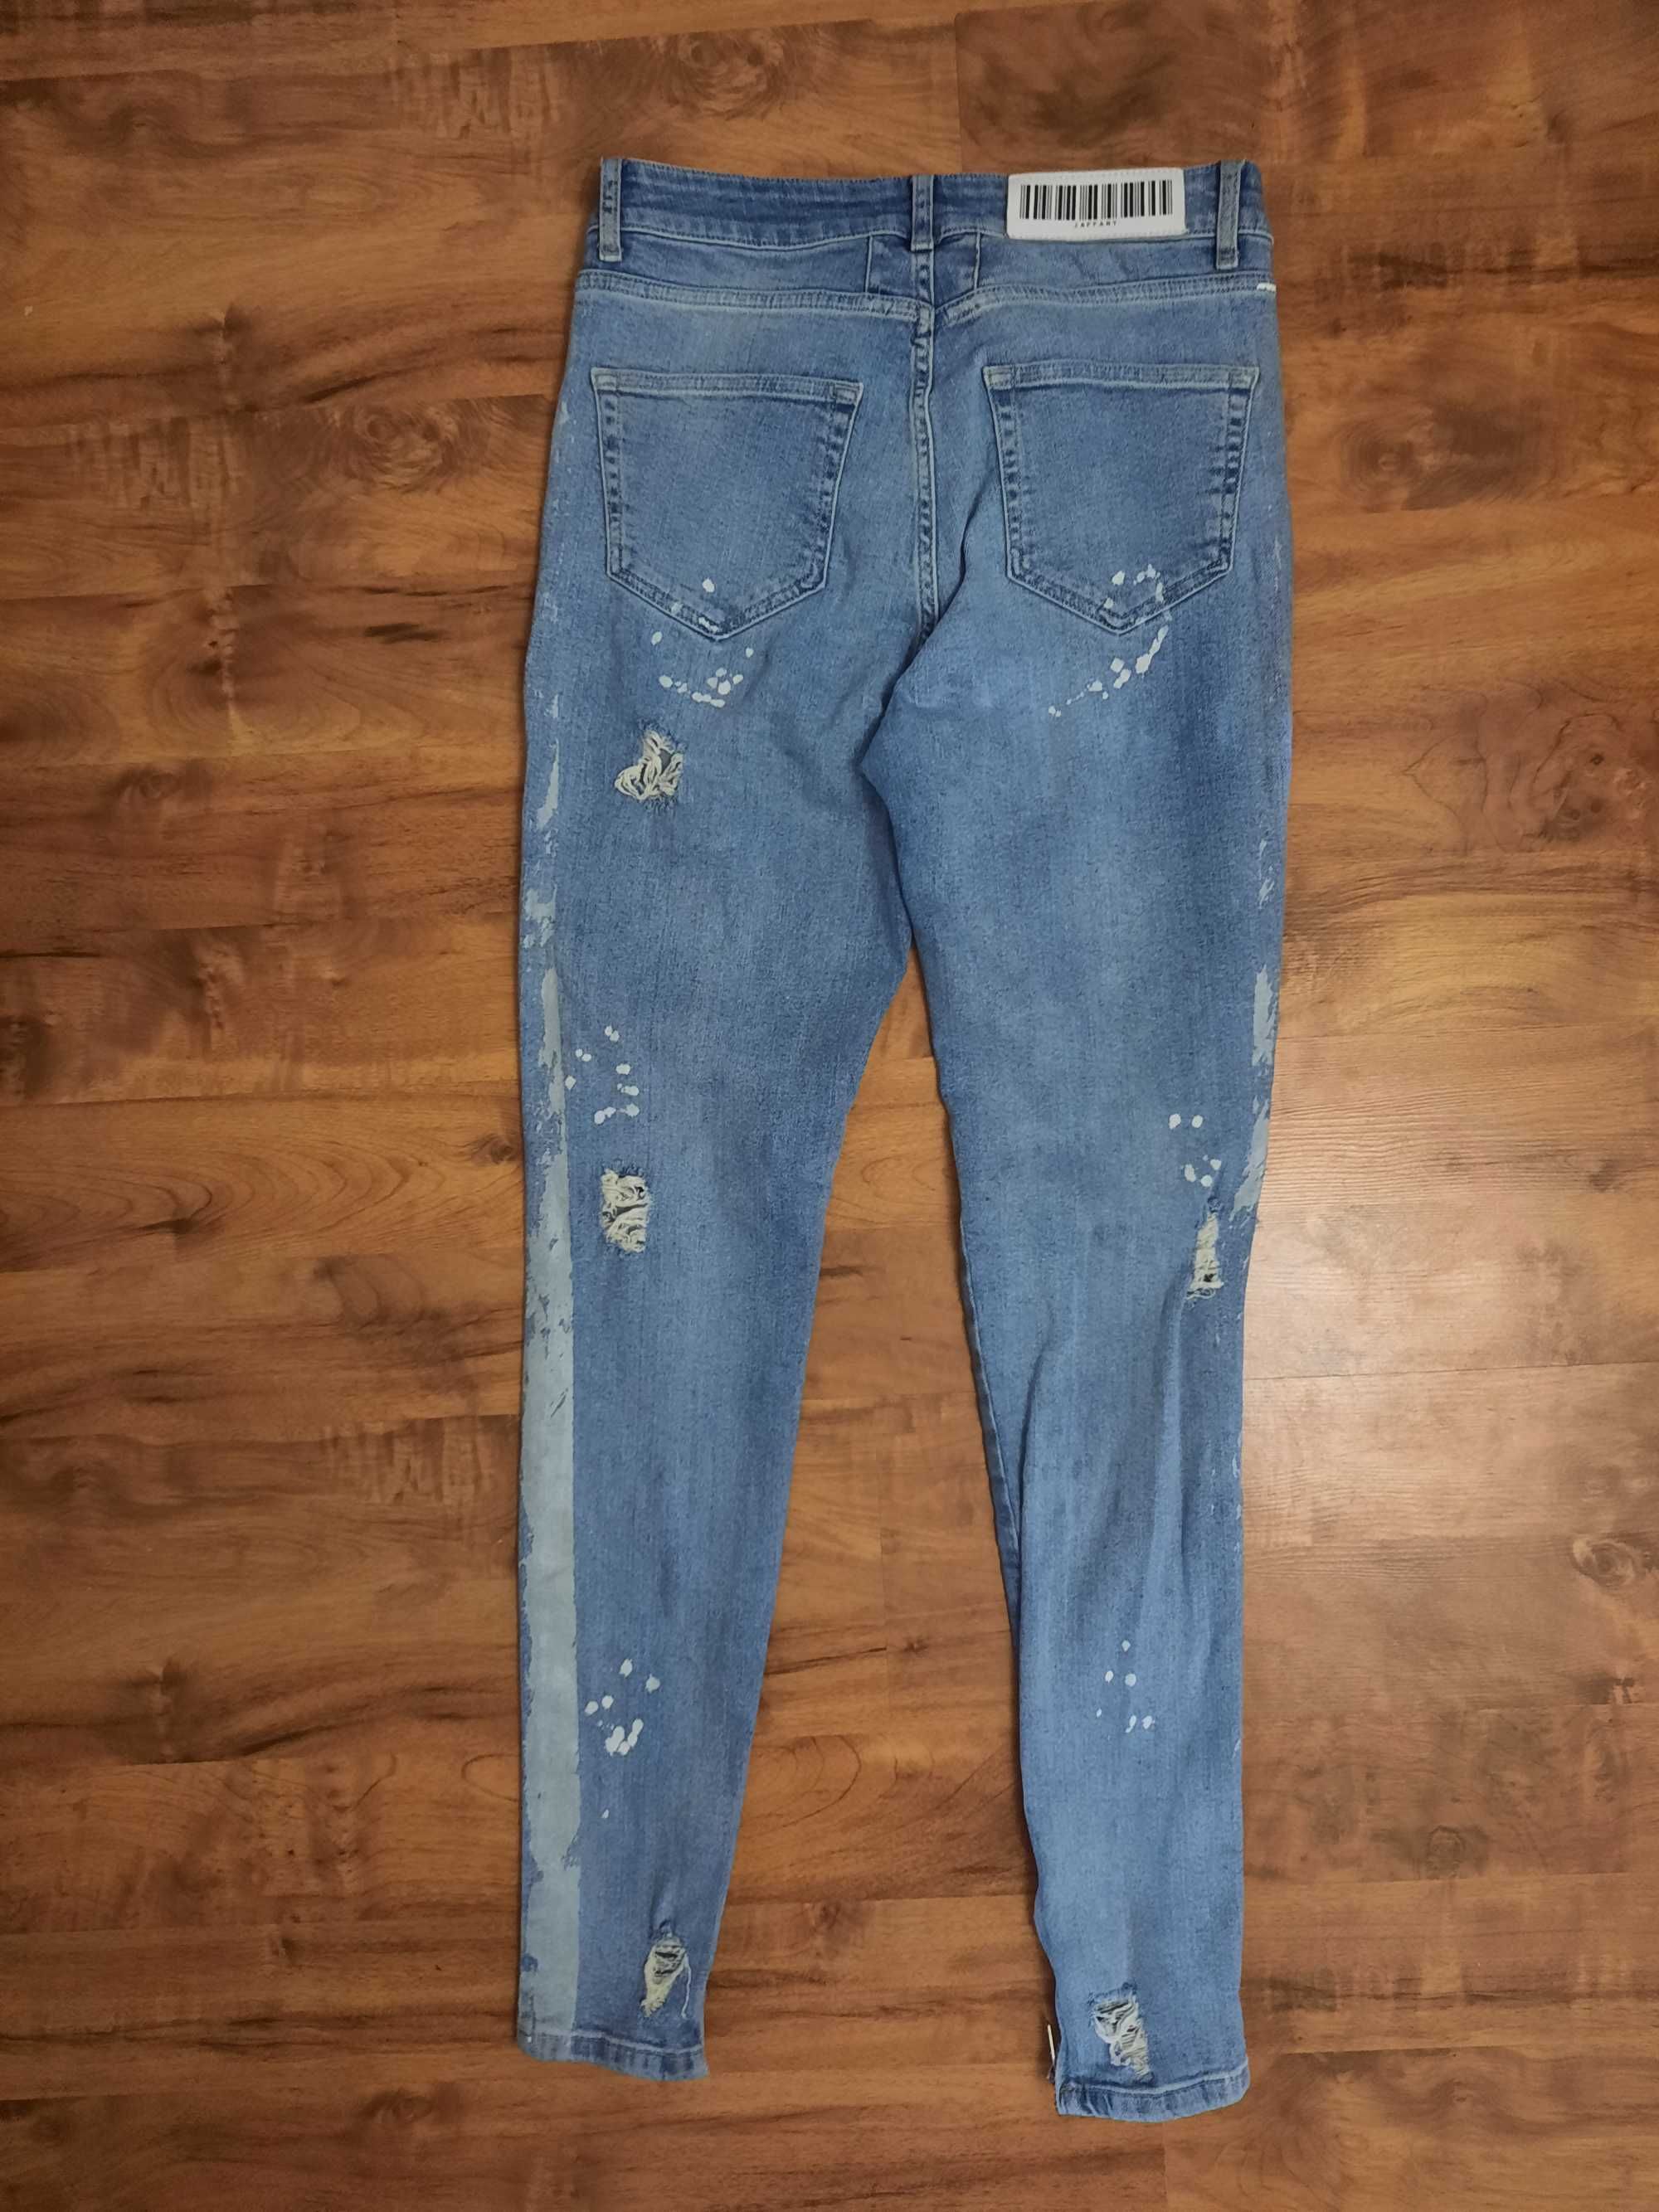 Jeansy spodnie jeansowe rurki z dziurami i przetarciami Jaffary roz 28